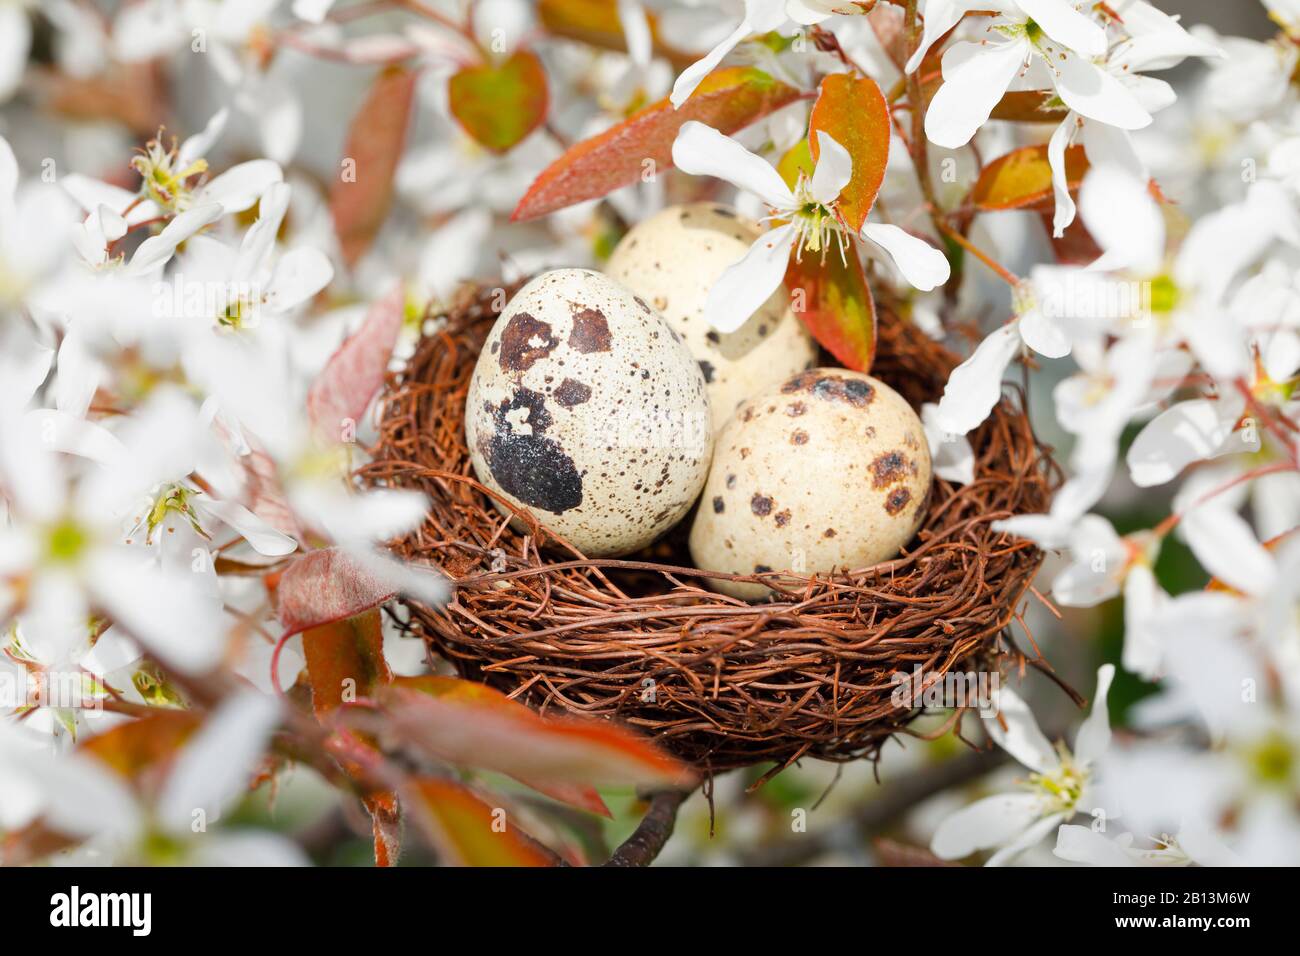 La Serviceberry de Lamarck (Amelanchier lamarckii) nichent avec des œufs de caille dans un serviceberry, la décoration de Pâques, Suisse Banque D'Images